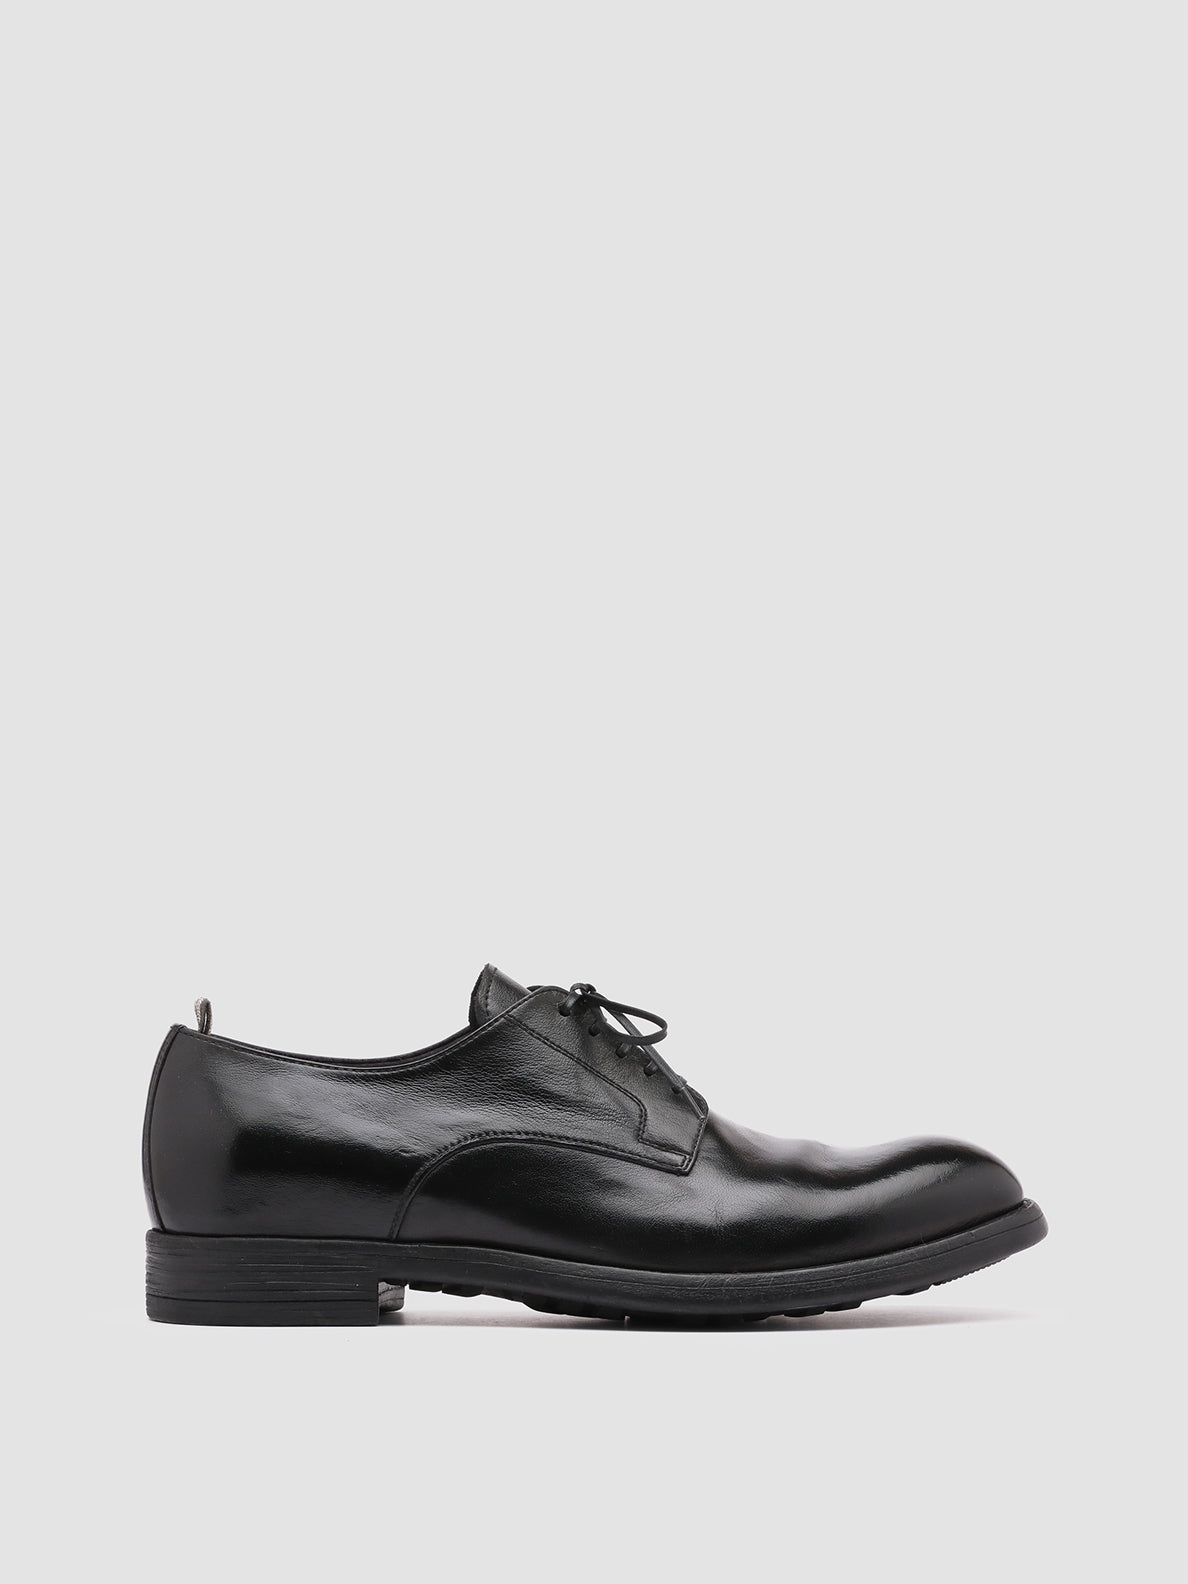 Men's Black Shoes CHRONICLE 001